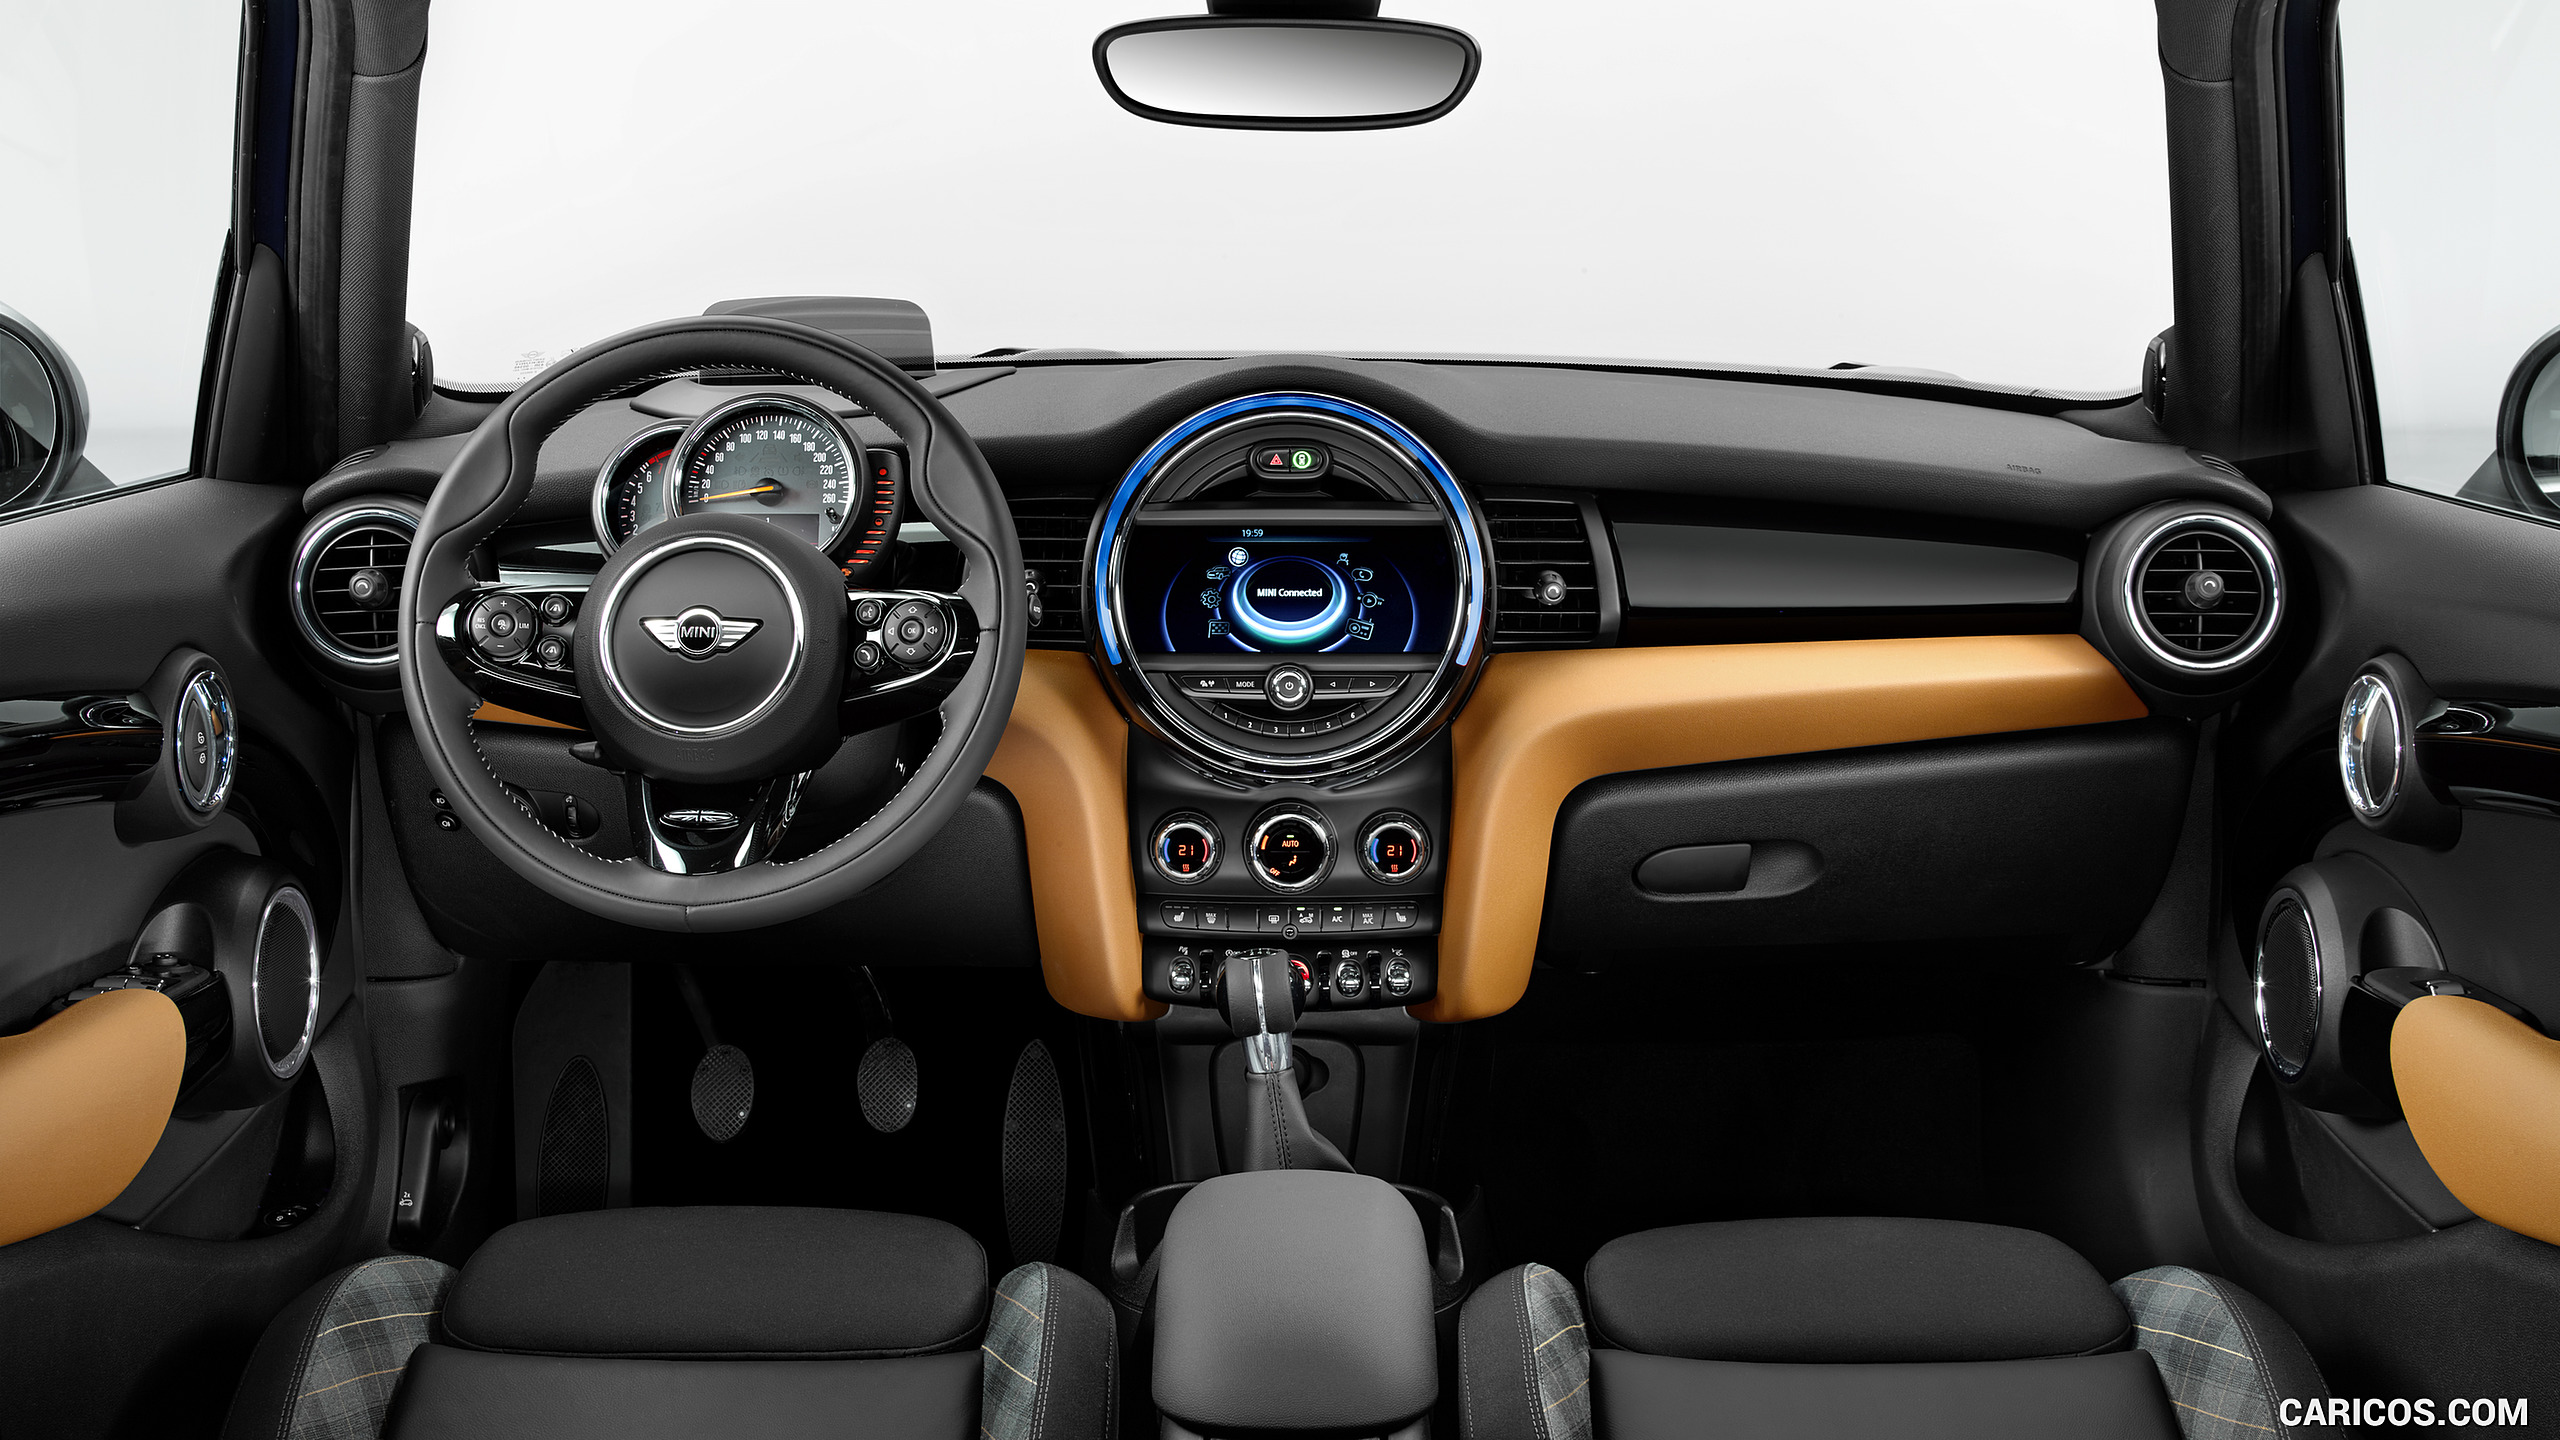 2016 MINI Cooper S Seven 5-Door - Interior, Cockpit, #12 of 92